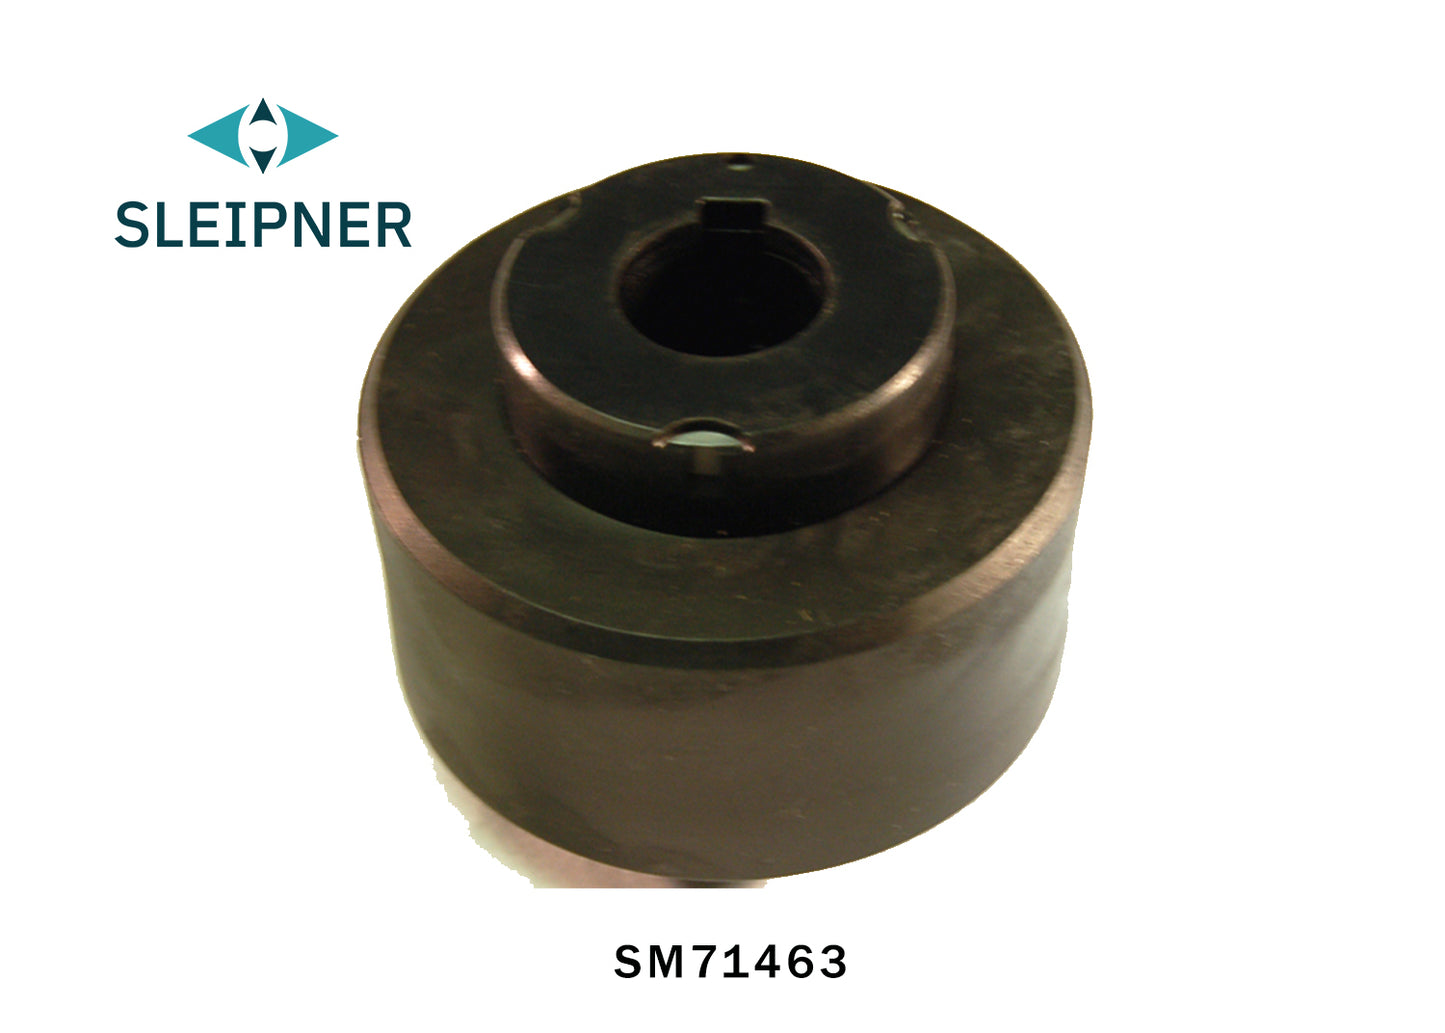 Sleipner Drive Coupler SM71463